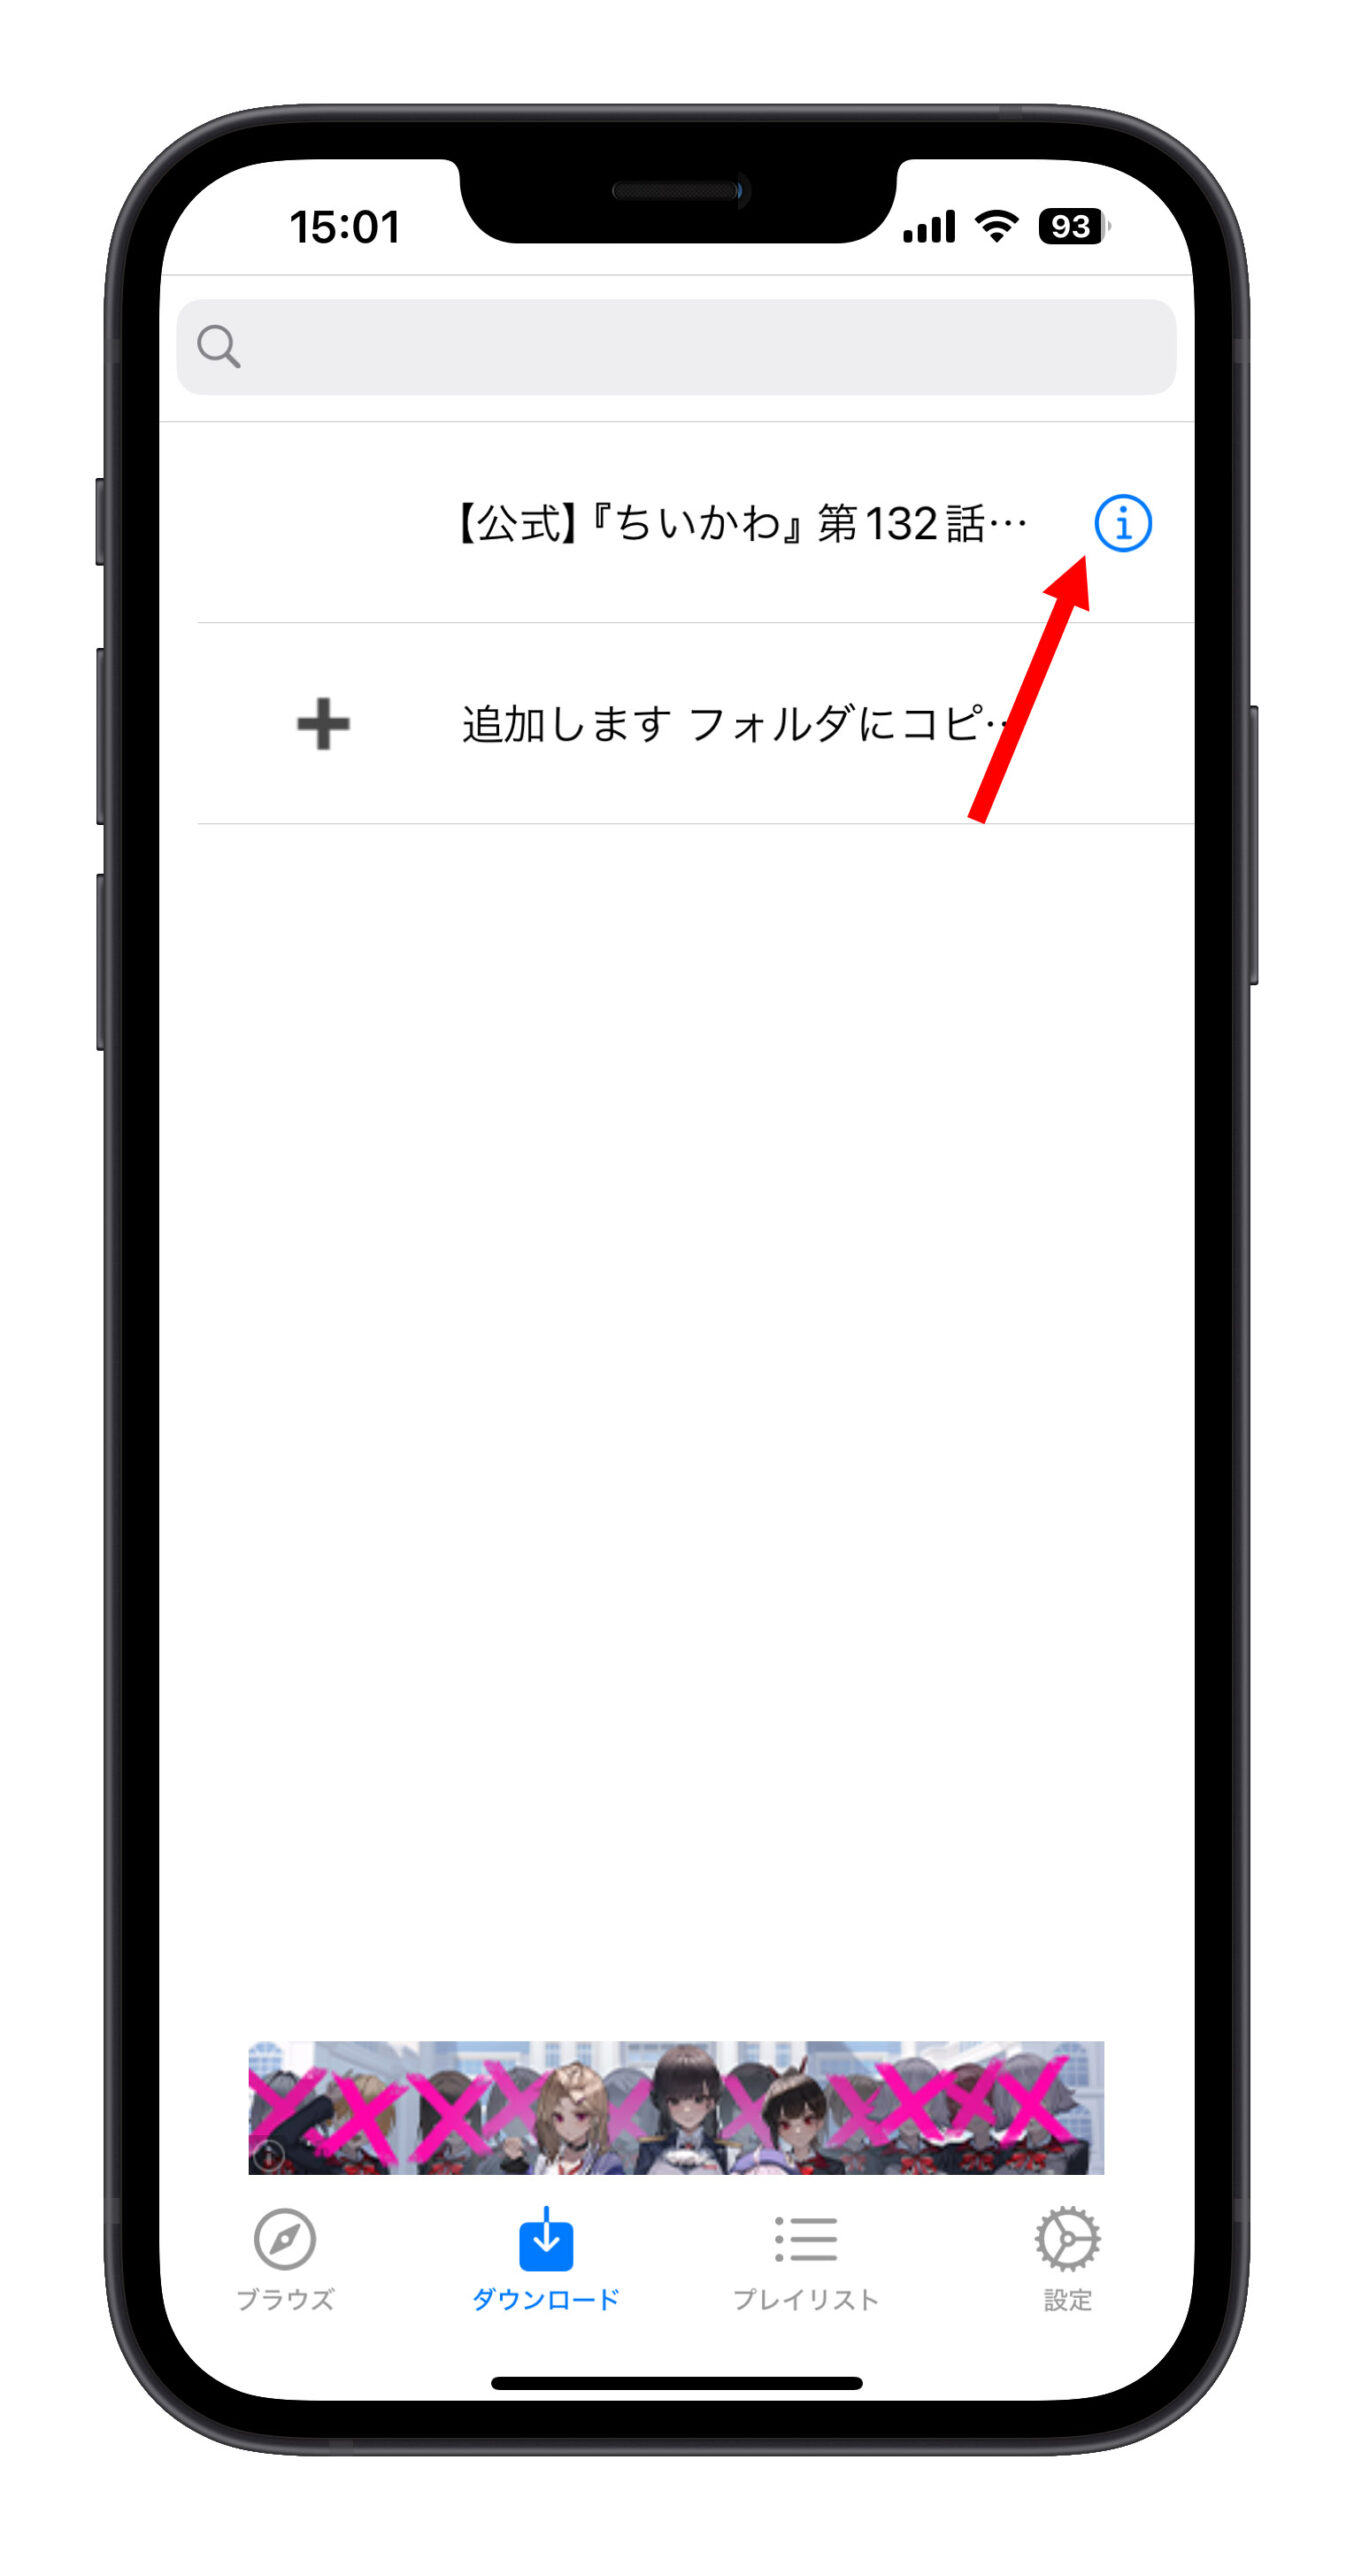 iPhone アプリ Video Master YouTube 動画をダウンロード